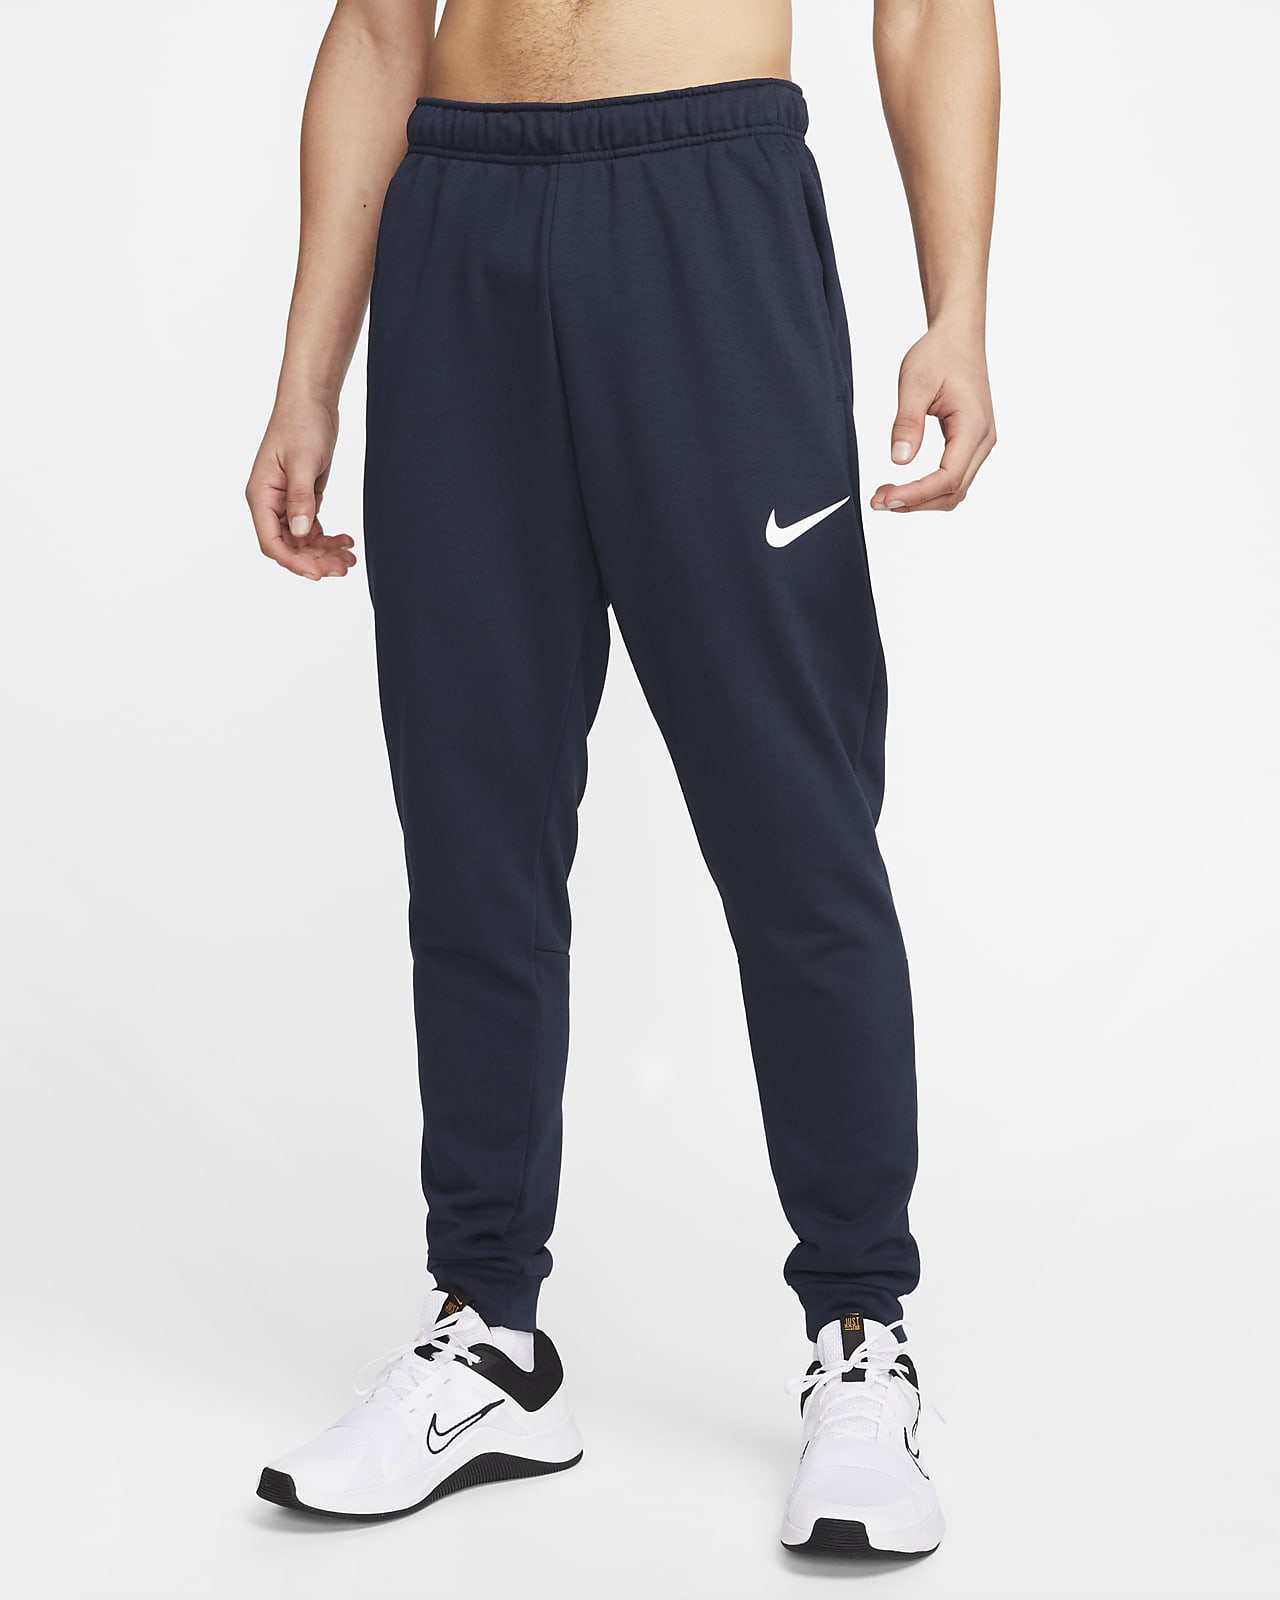 Nike Dry Dri-FIT schmal zulaufende Fitness-Fleece-Hose für Herren